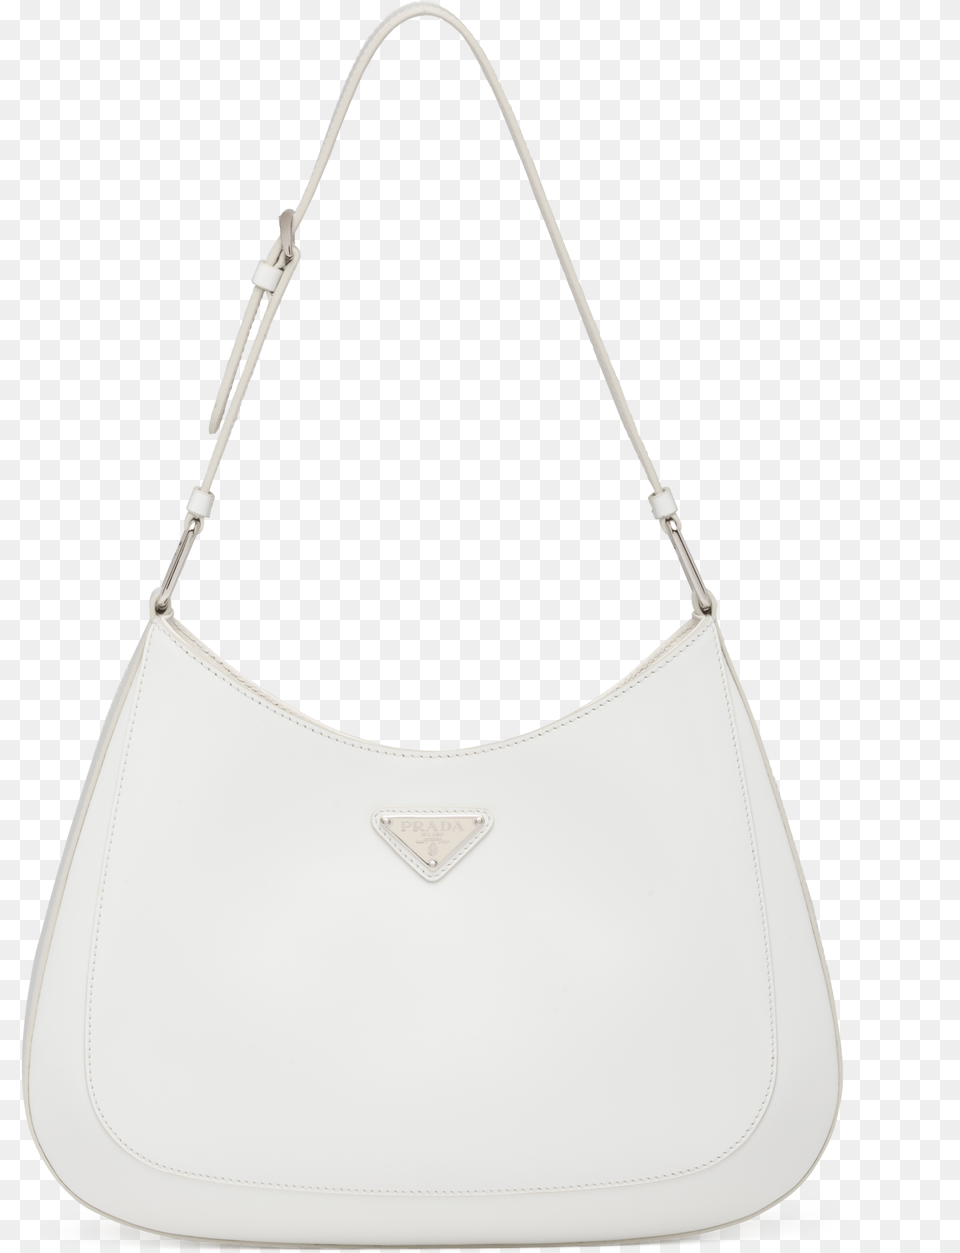 Prada Cleo Brushed Leather Shoulder Bag For Women, Accessories, Handbag, Purse Free Transparent Png